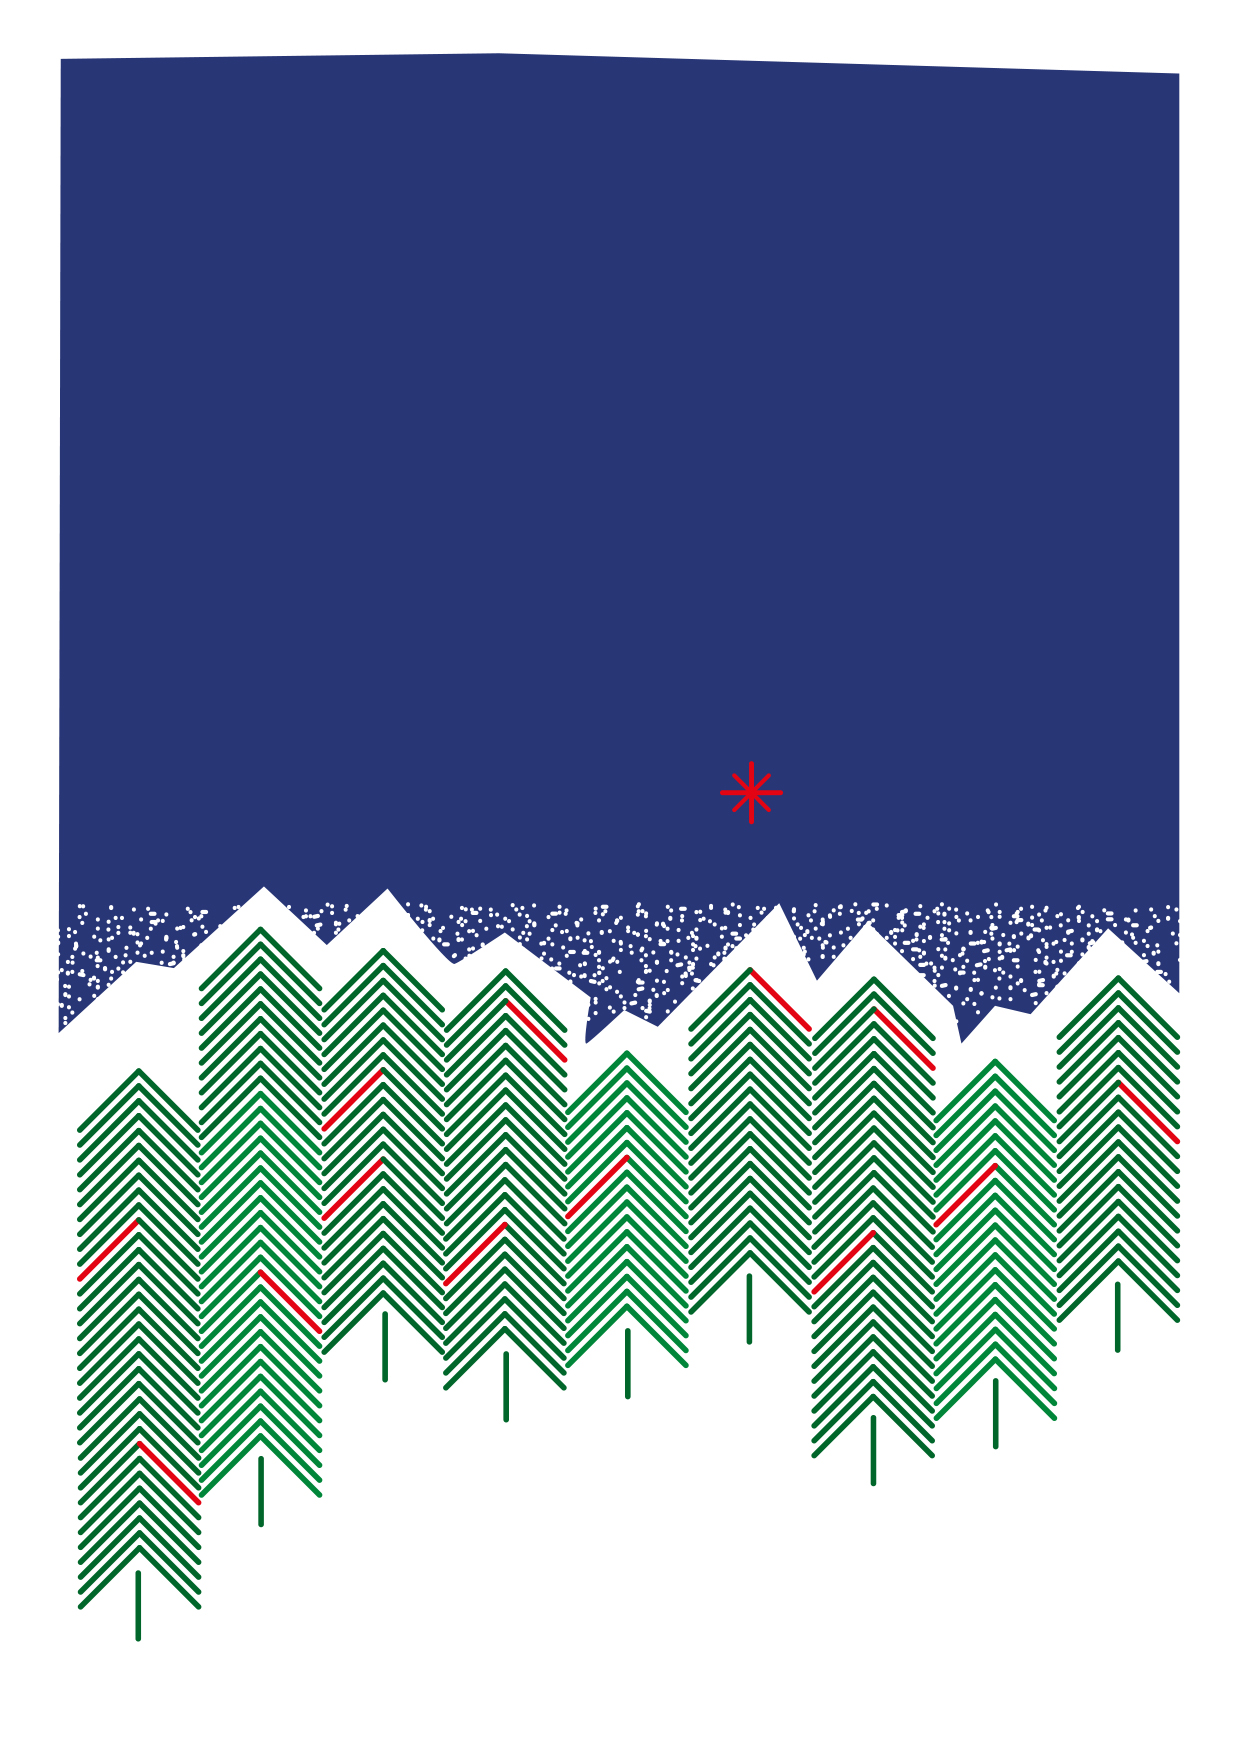 Pionowy prostokąt plakatu. Środek obrazu wypełniają symboliczne choinki. Zbudowane z linii zgiętych pod kątem prostym, które ułożone na sobie pionowo w niewielkich odstępach, tworzą nierównomierny rząd różnych rozmiarem zielonych drzewek z niewielkimi akcentami czerwieni.  Umieszczone w środkowej części na białym tle,  pod ciemnym błękitem nieba z czerwoną gwiazdką,  sprawiają wrażenie otulonych bielą,  stojących na śniegu i okrytych śnieżnymi czapami. 